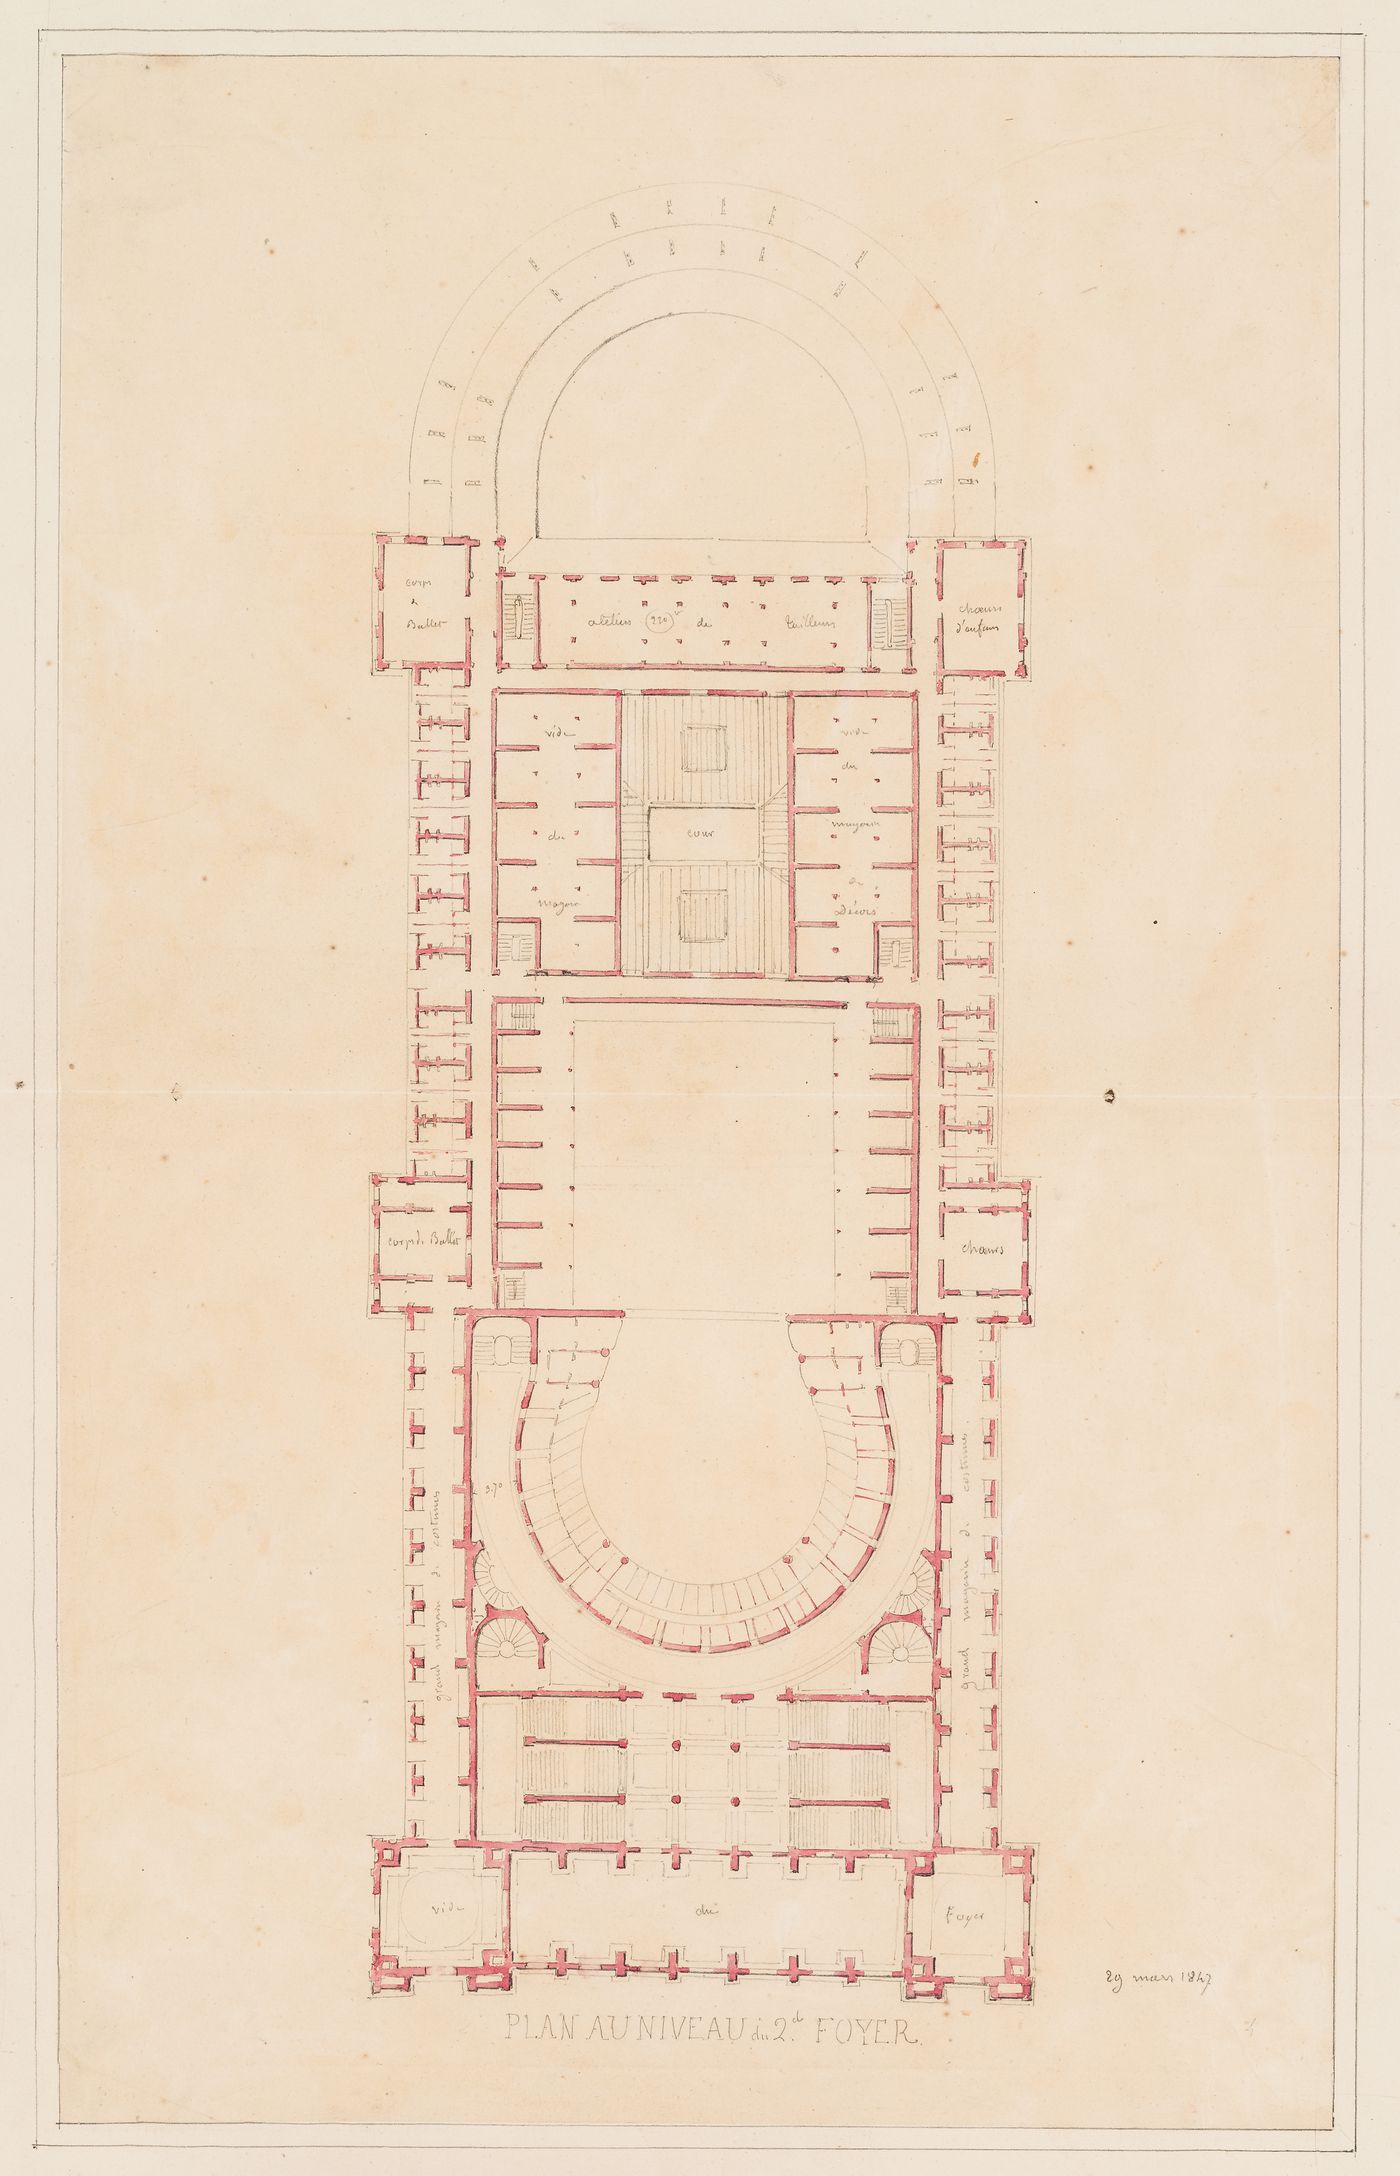 Plan for the "niveau au 2e foyer" for an opera house for the Académie royale de musique